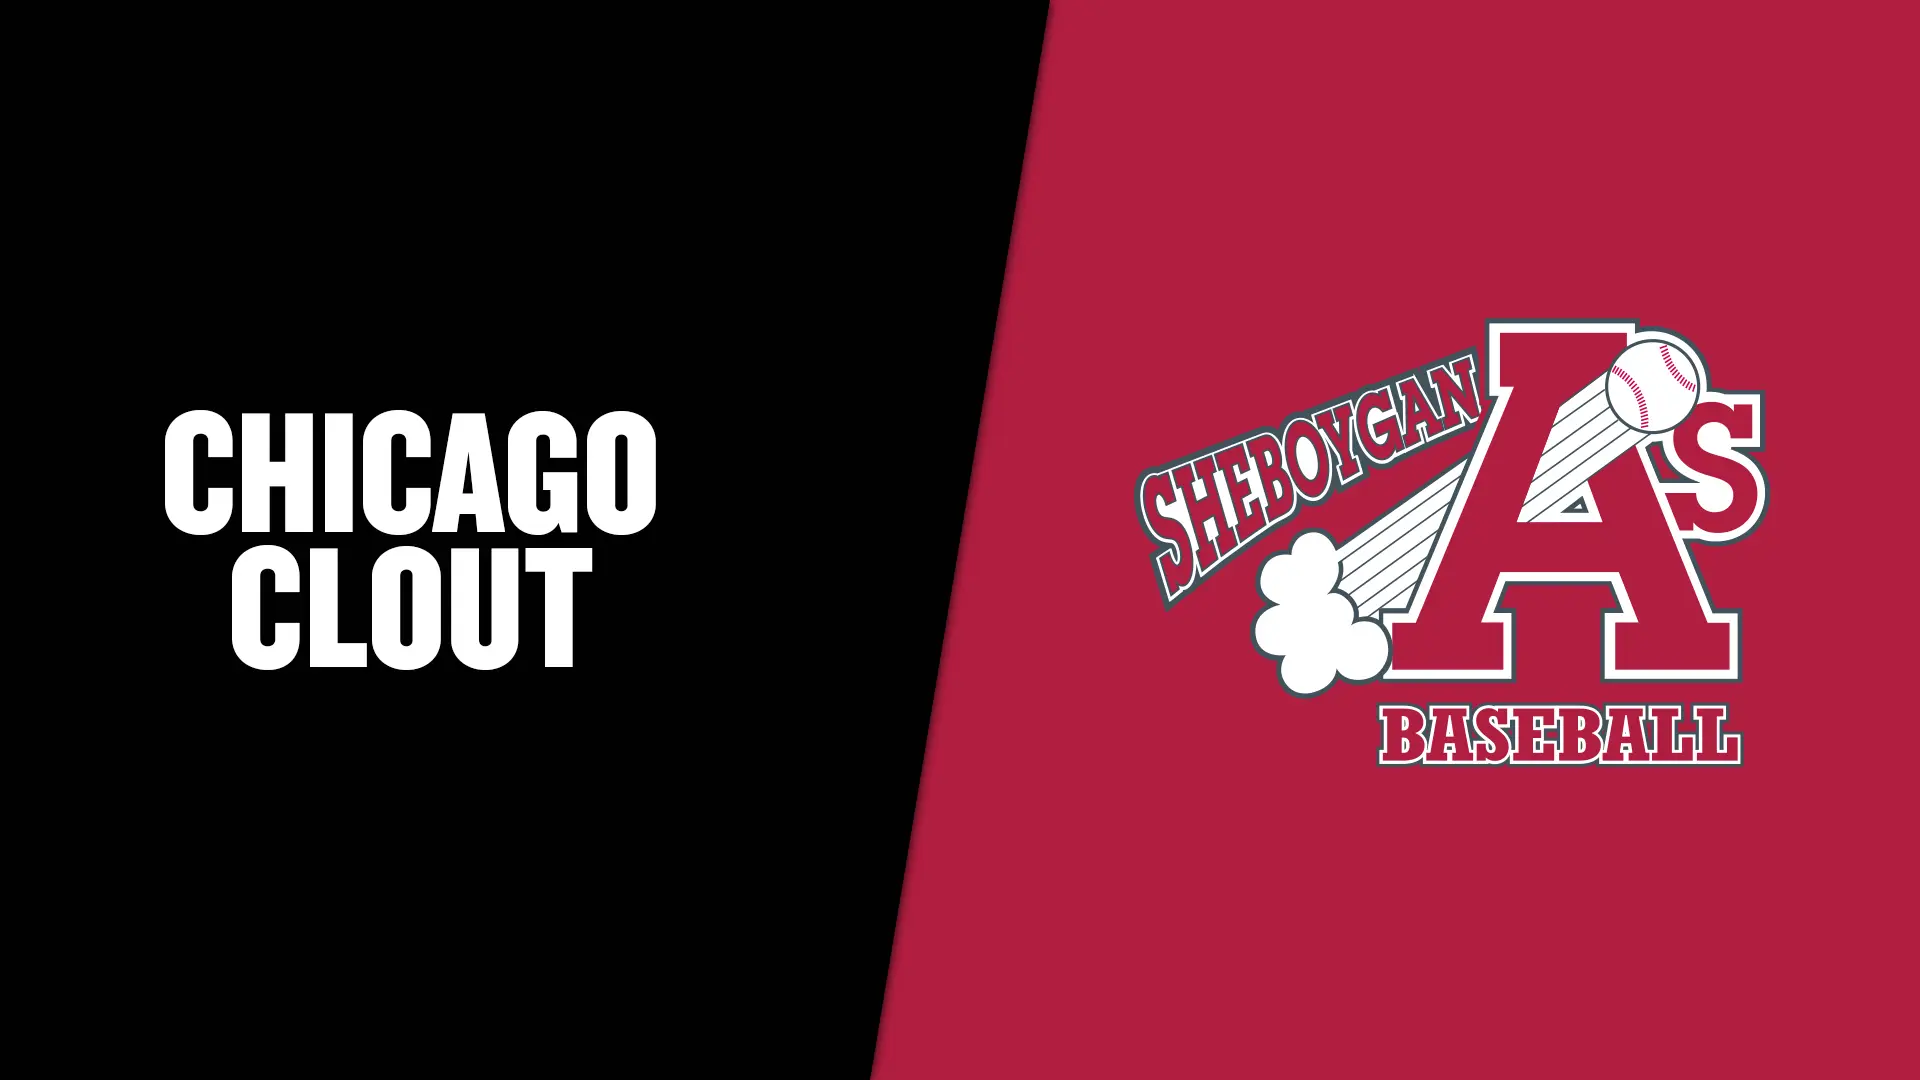 Sheboygan A's vs. Chicago Clout